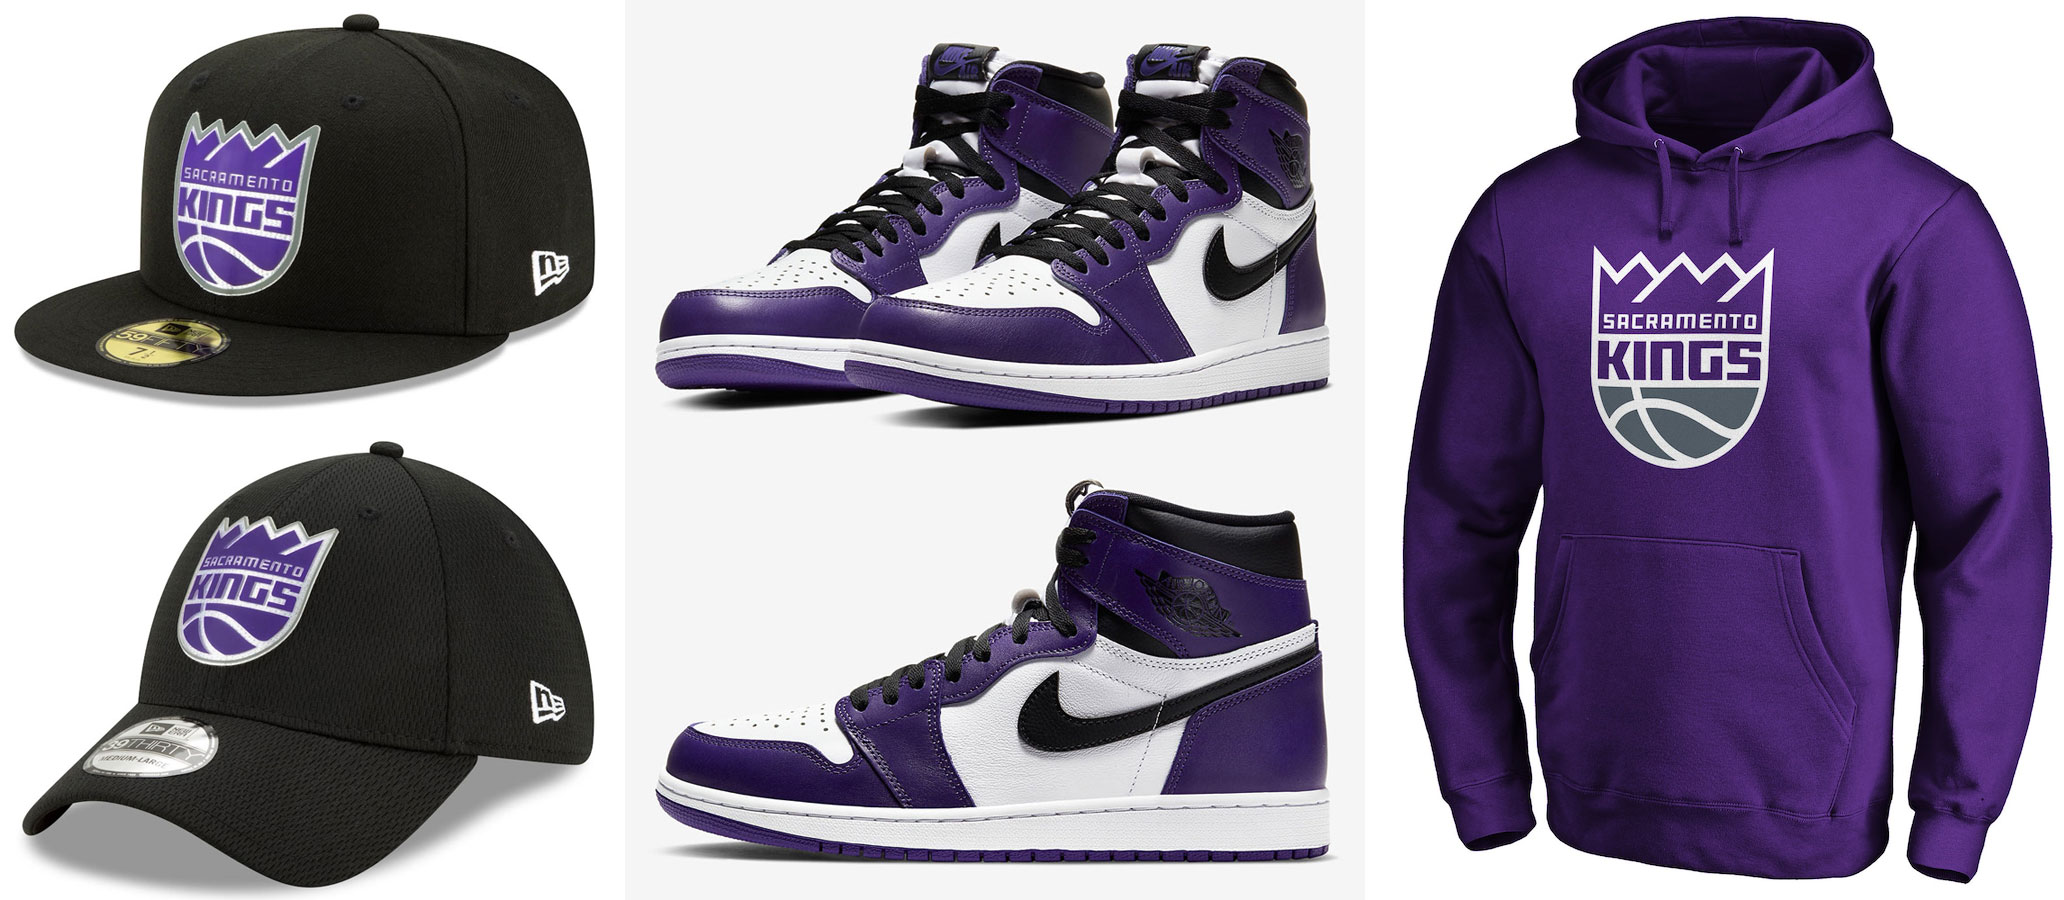 aj1 court purple outfit